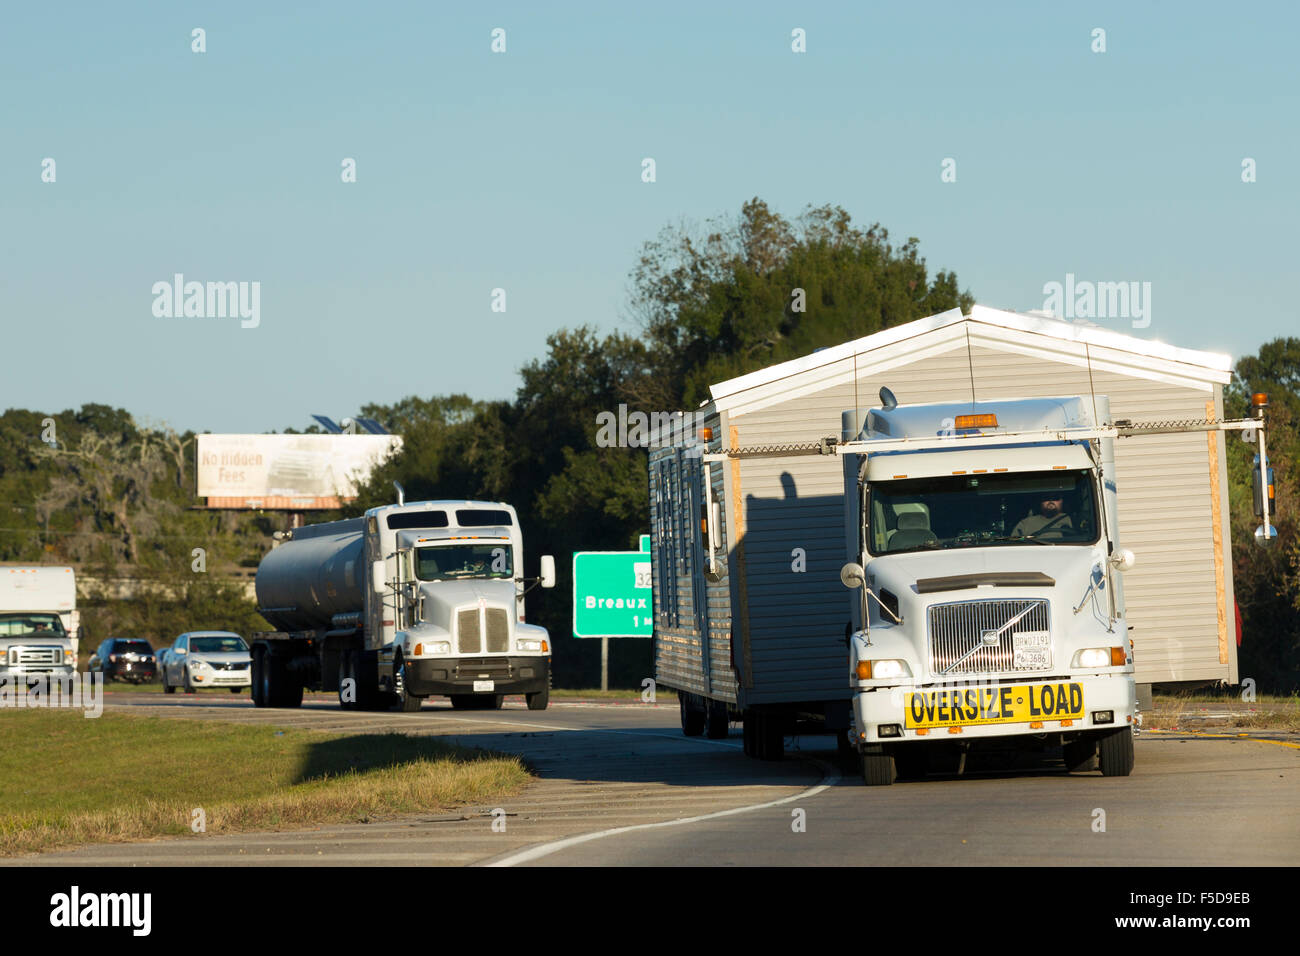 Déménagement Accueil - Volvo Truck américain du transport de charge sur l'échelle mobile home route de camionnage de l'autoroute Interstate 10, Louisiane, Etats-Unis Banque D'Images